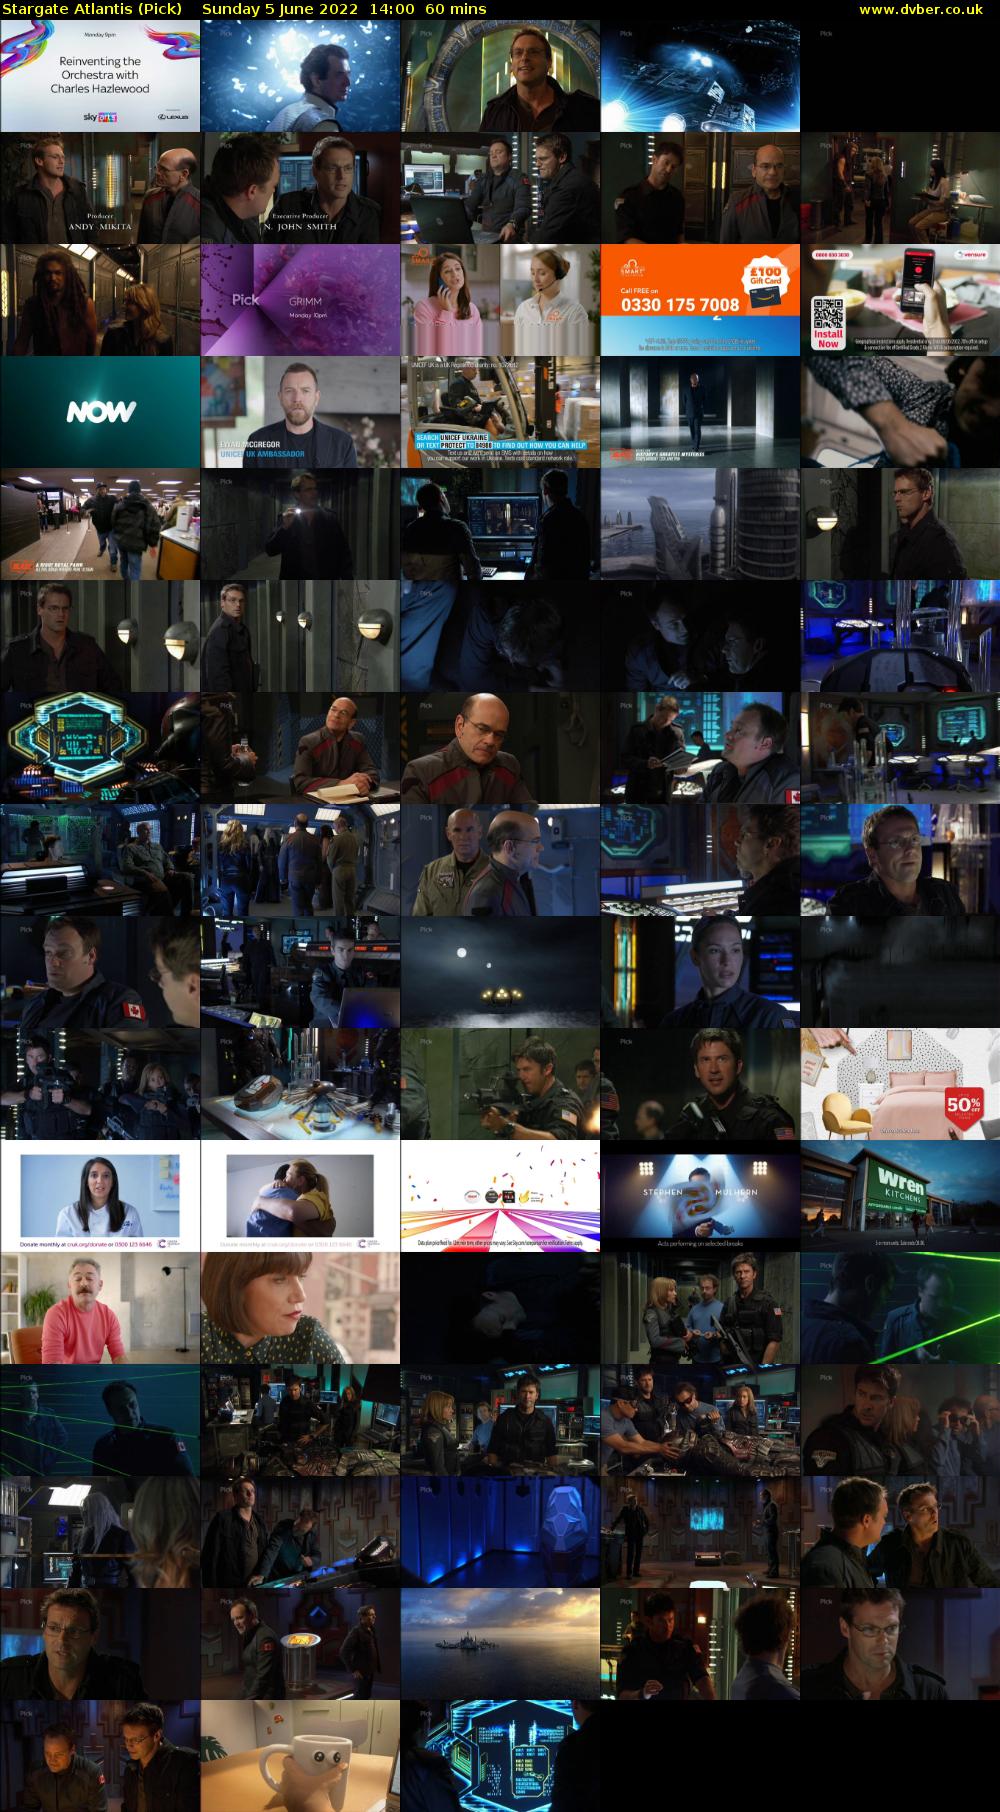 Stargate Atlantis (Pick) Sunday 5 June 2022 14:00 - 15:00